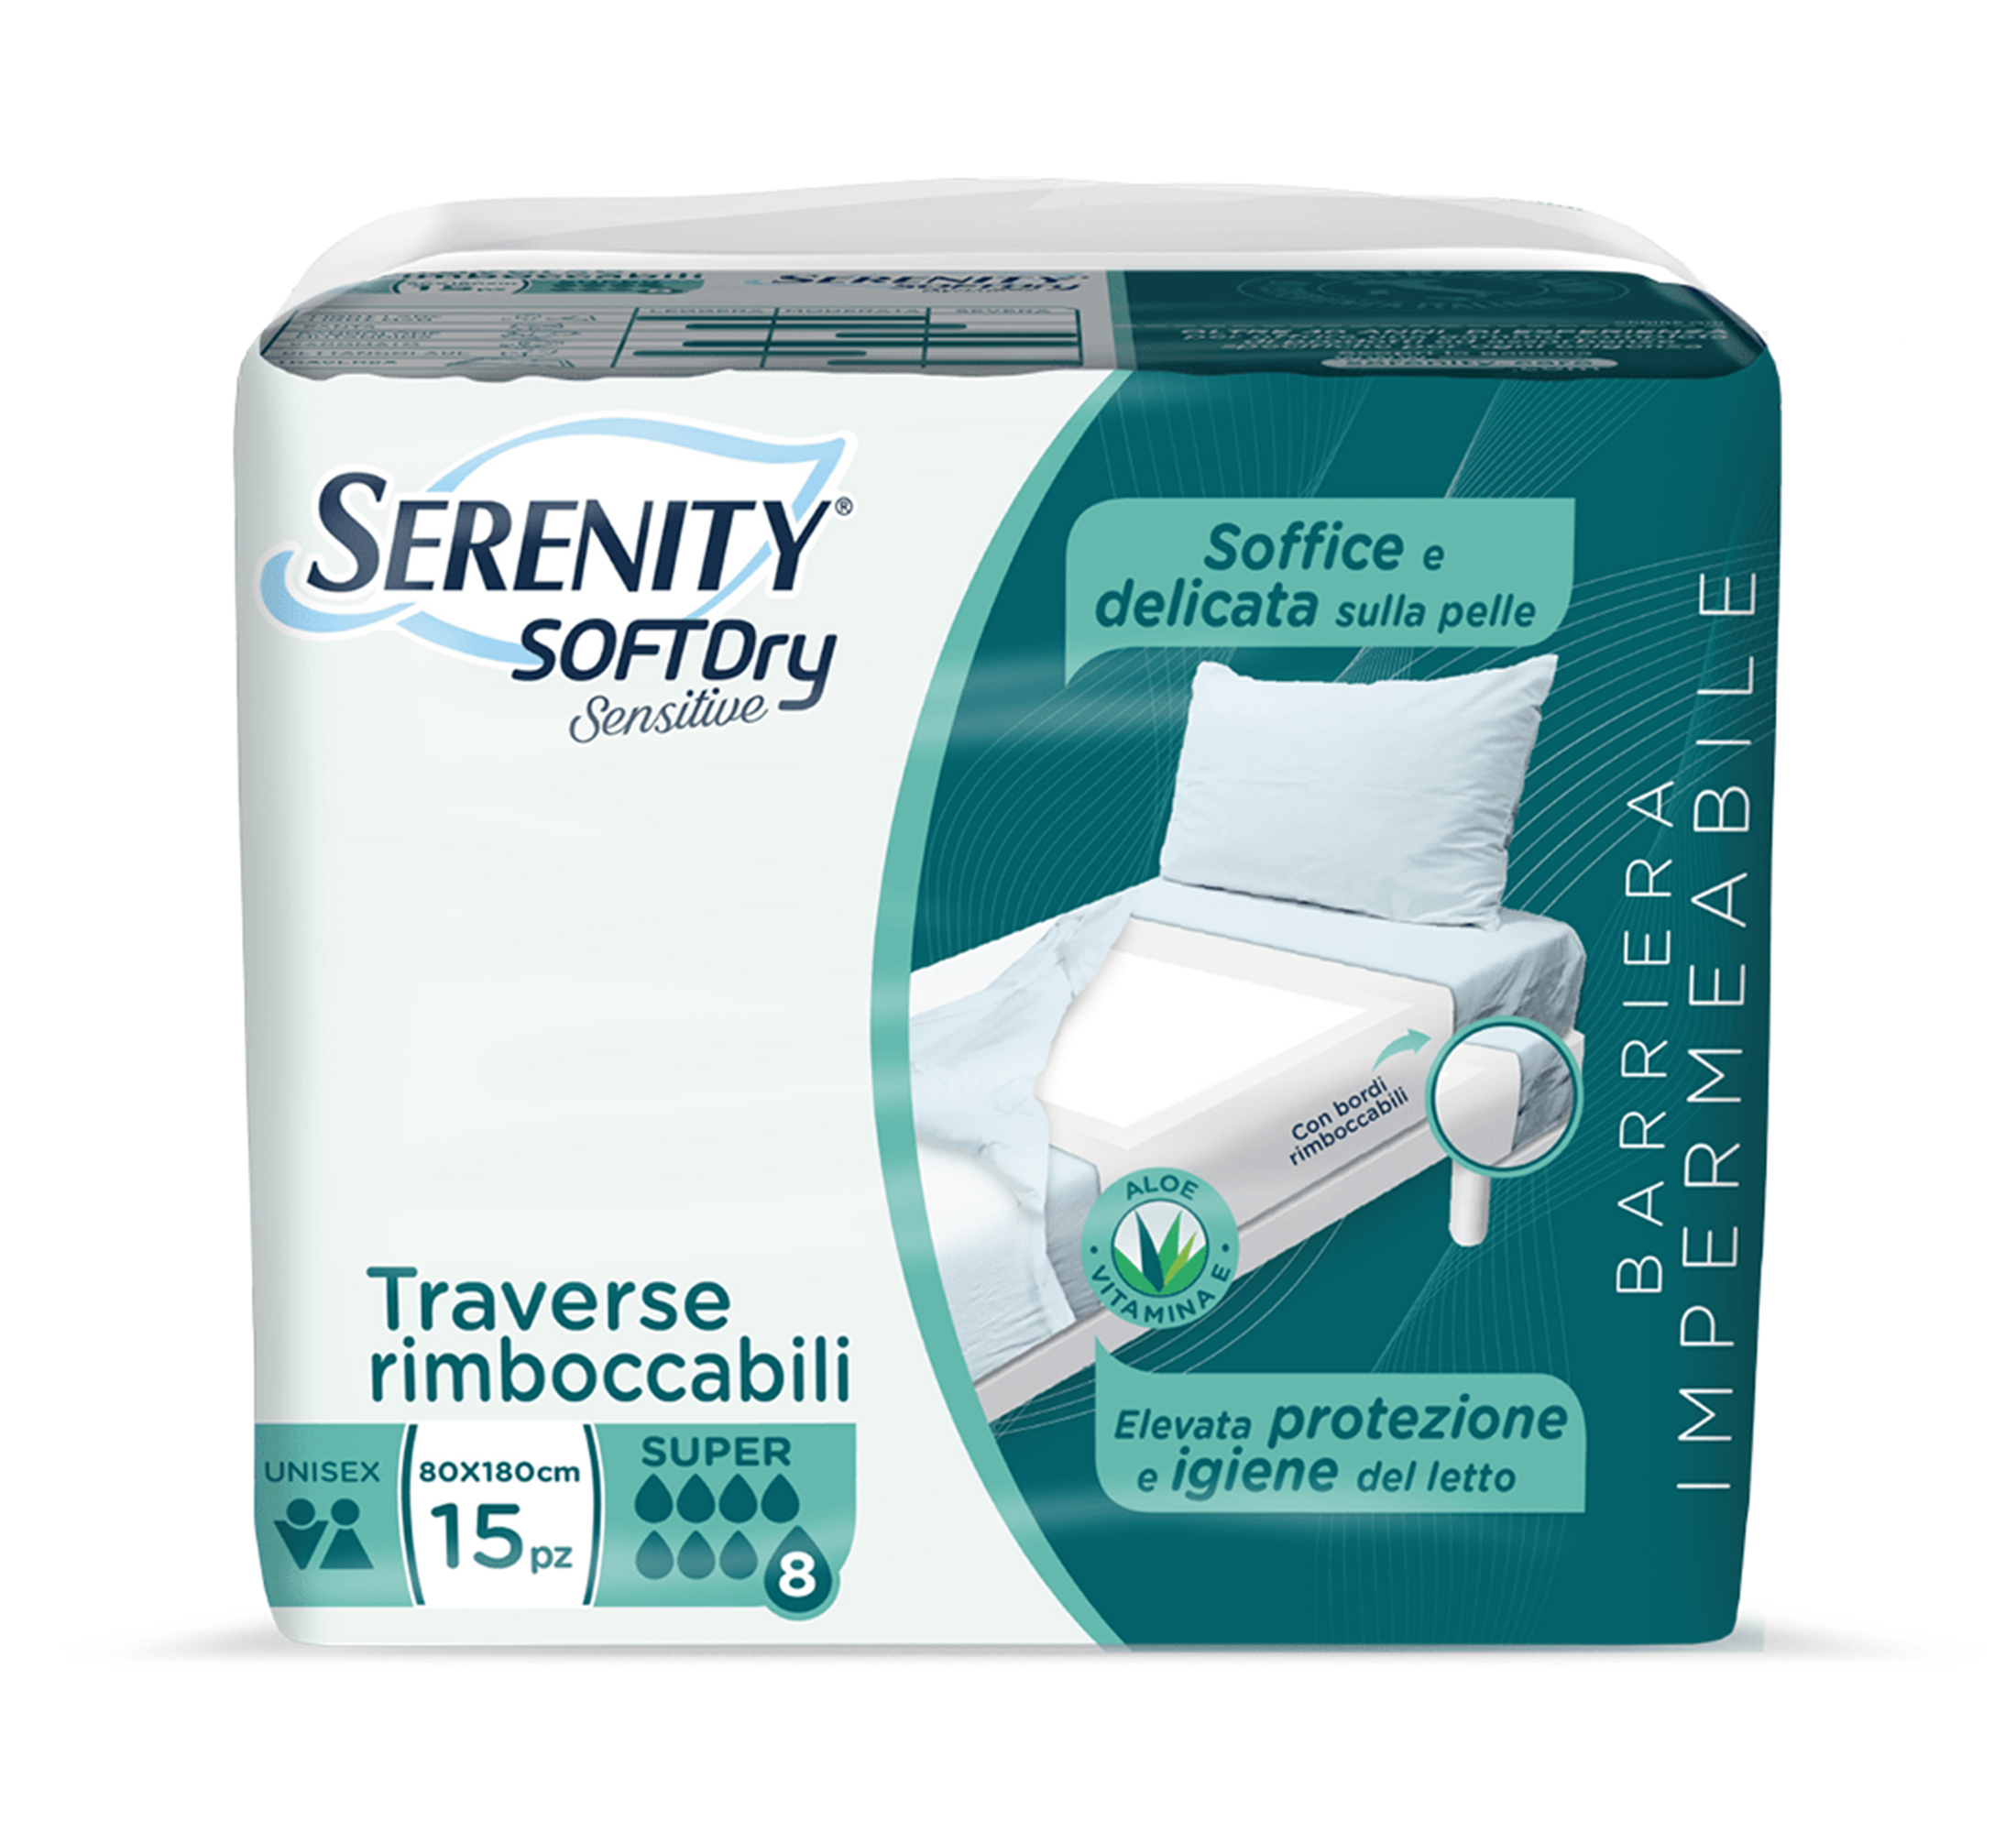 SERENITY SoftDry Sensitive Super Inkontinenz-Schutzunterlagen, 80x180 cm, 15 Stk.